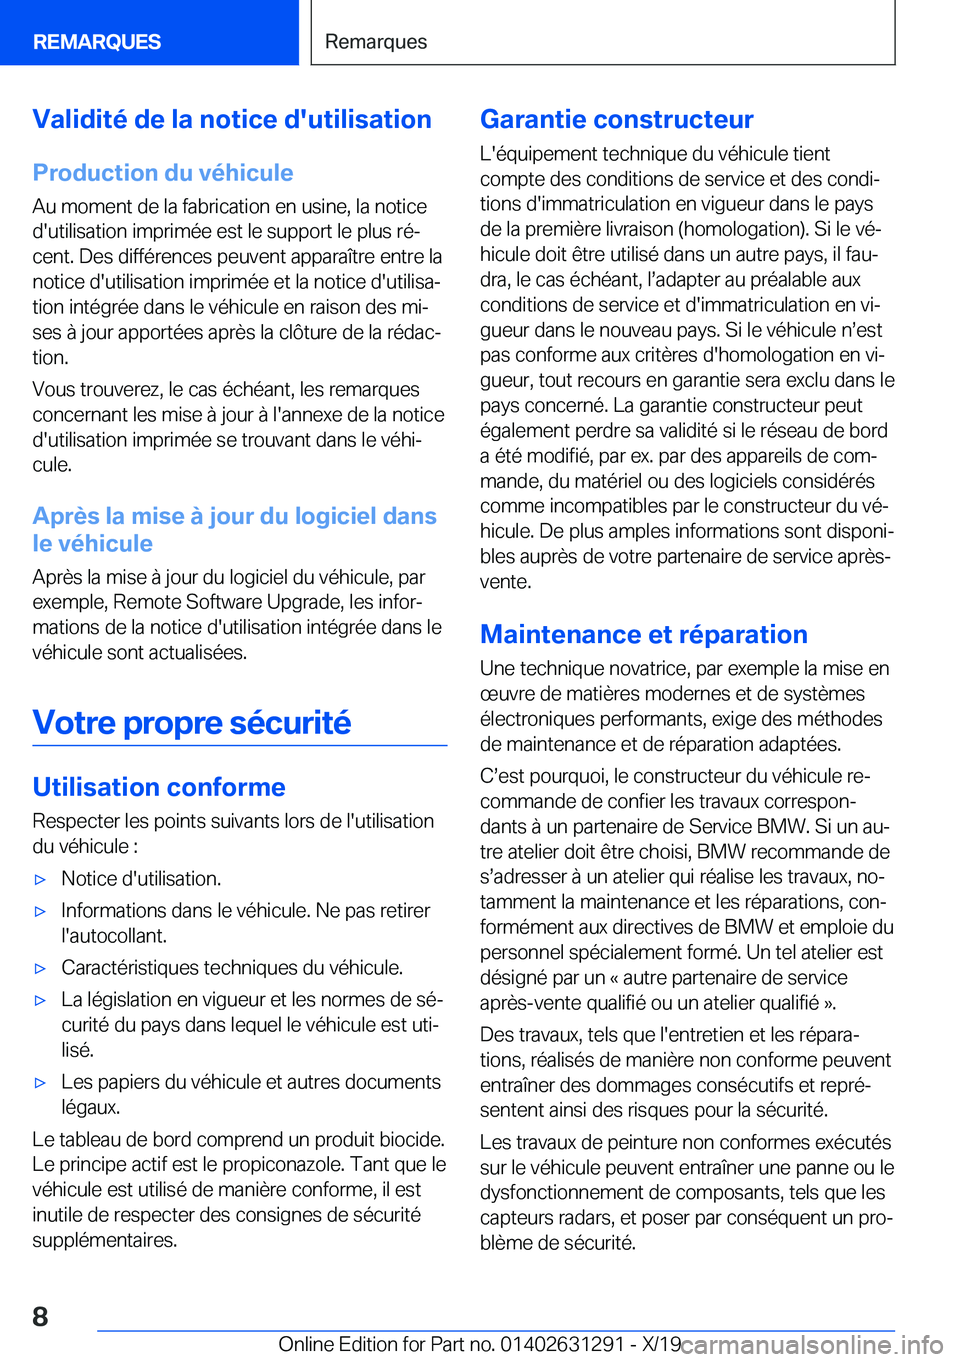 BMW M8 2020  Notices Demploi (in French) �V�a�l�i�d�i�t�é��d�e��l�a��n�o�t�i�c�e��d�'�u�t�i�l�i�s�a�t�i�o�n
�P�r�o�d�u�c�t�i�o�n��d�u��v�é�h�i�c�u�l�e
�A�u��m�o�m�e�n�t��d�e��l�a��f�a�b�r�i�c�a�t�i�o�n��e�n��u�s�i�n�e�,��l